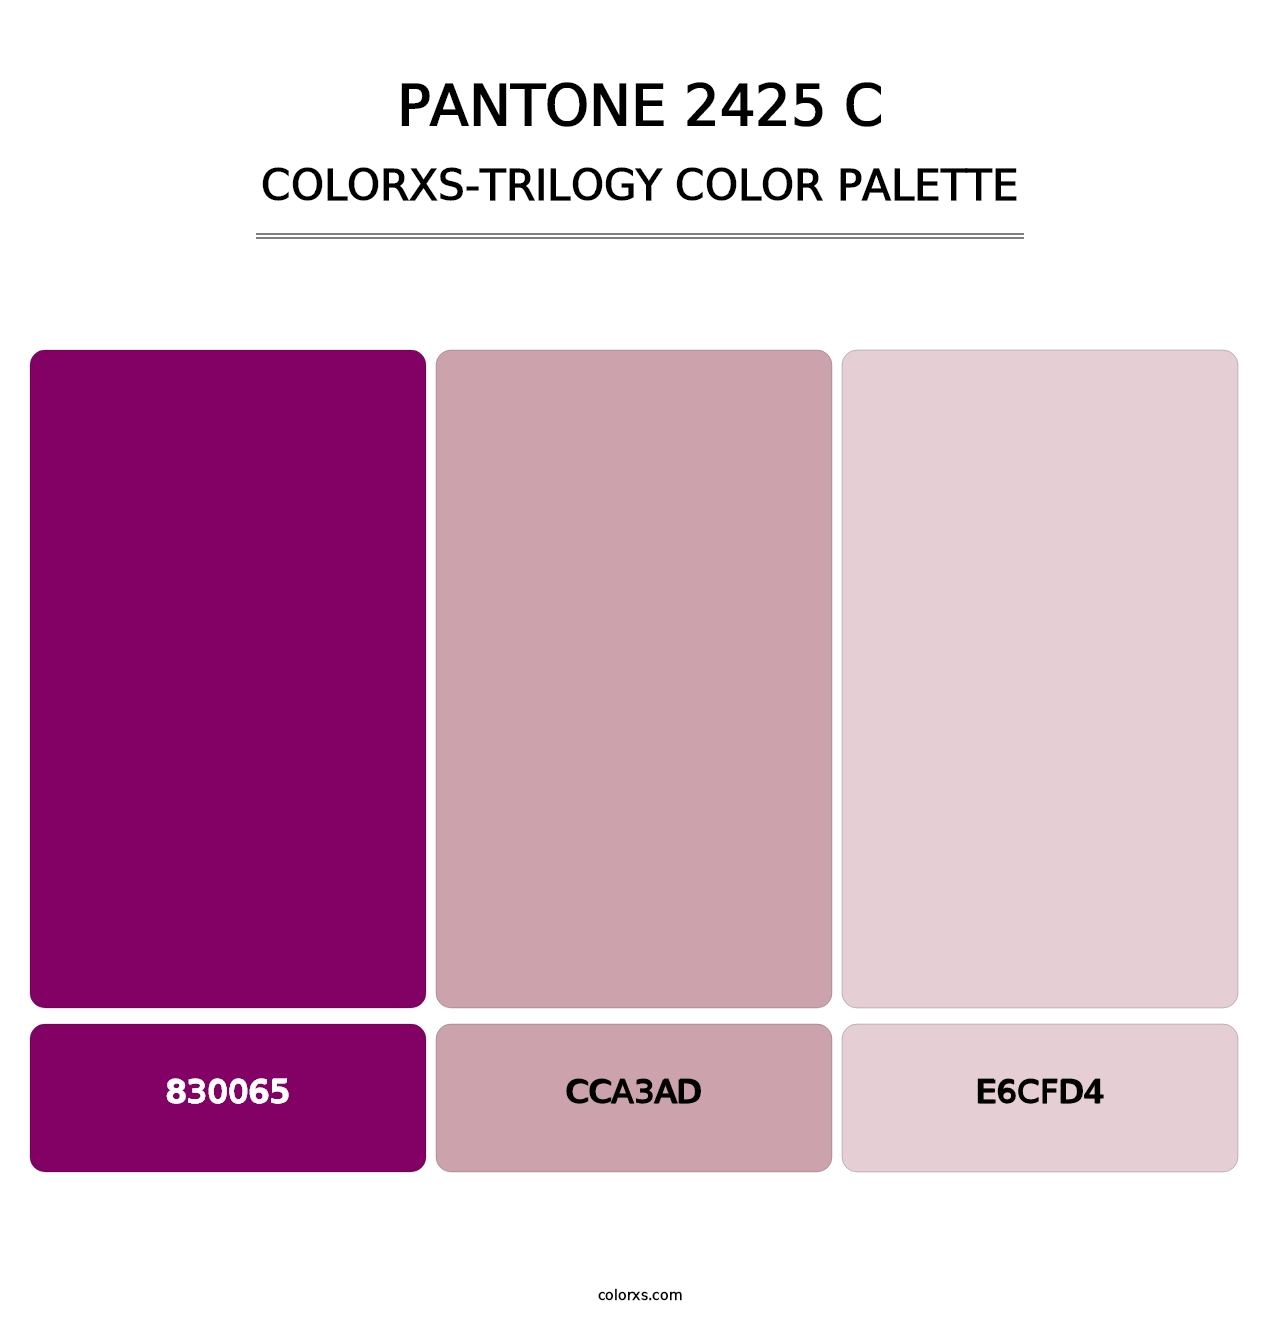 PANTONE 2425 C - Colorxs Trilogy Palette